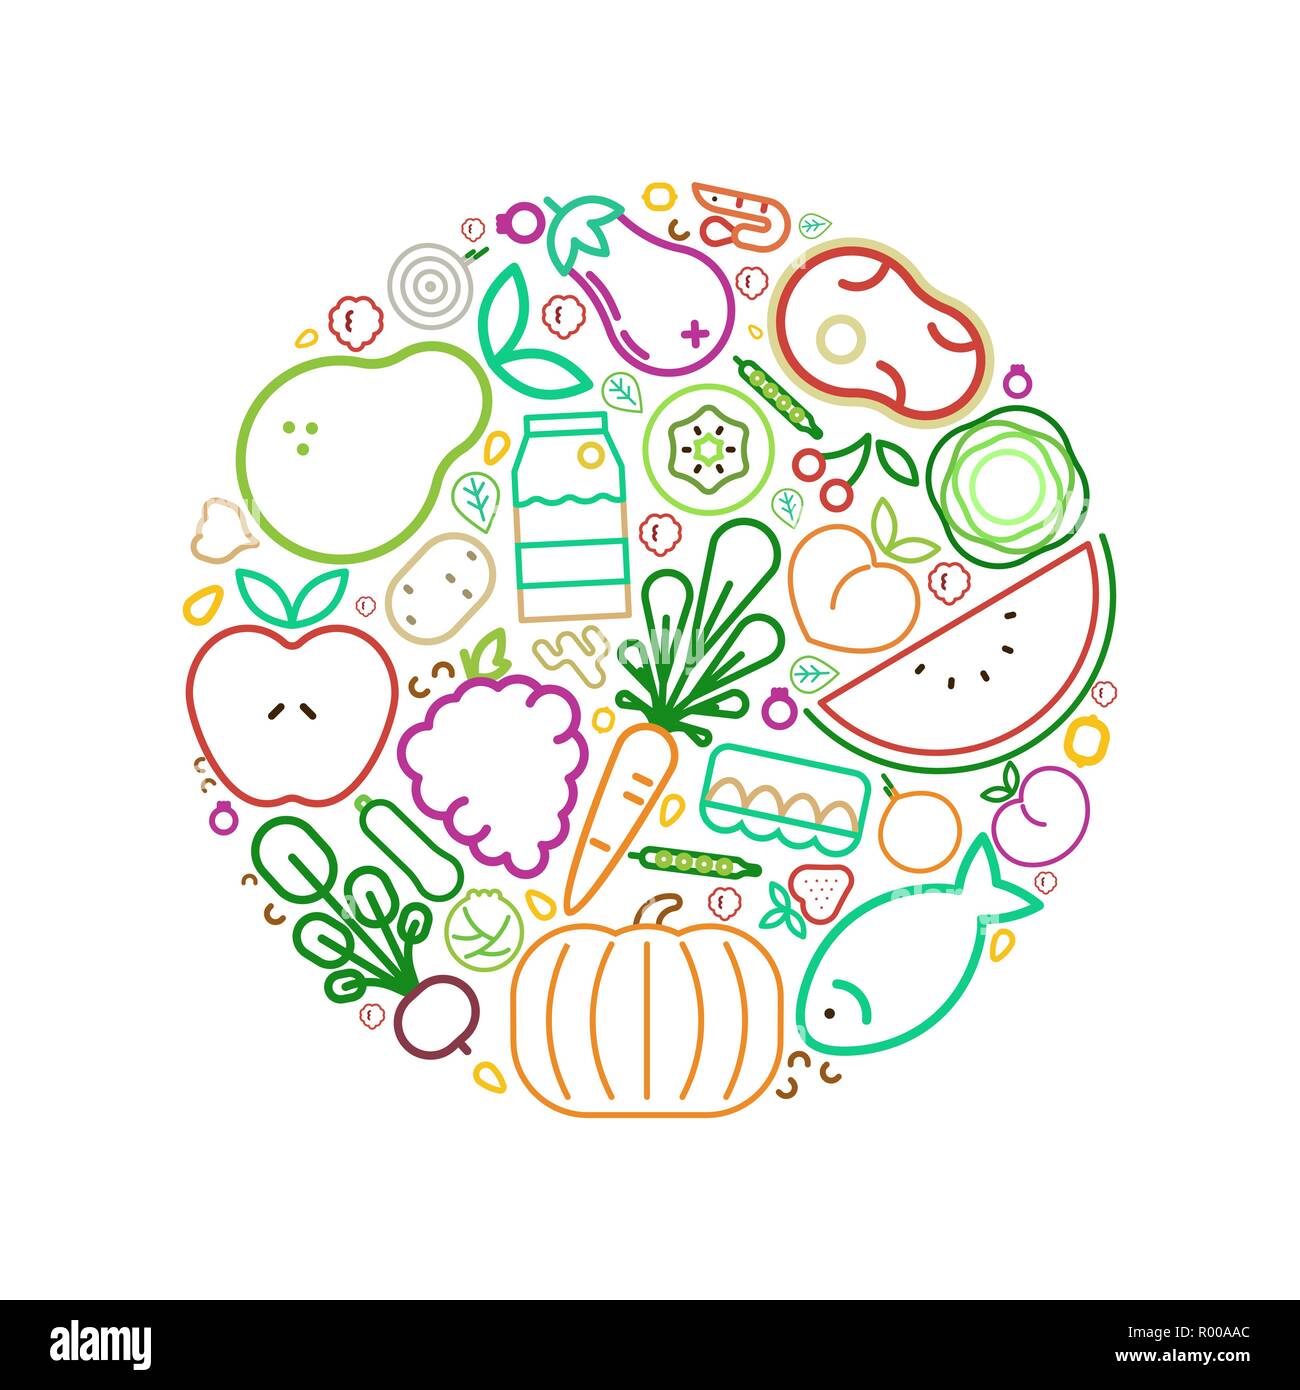 Icônes alimentaire illustration cercle de saine alimentation ou alimentation équilibrée concept. Comprend des fruits, légumes, viandes et produits laitiers. Illustration de Vecteur